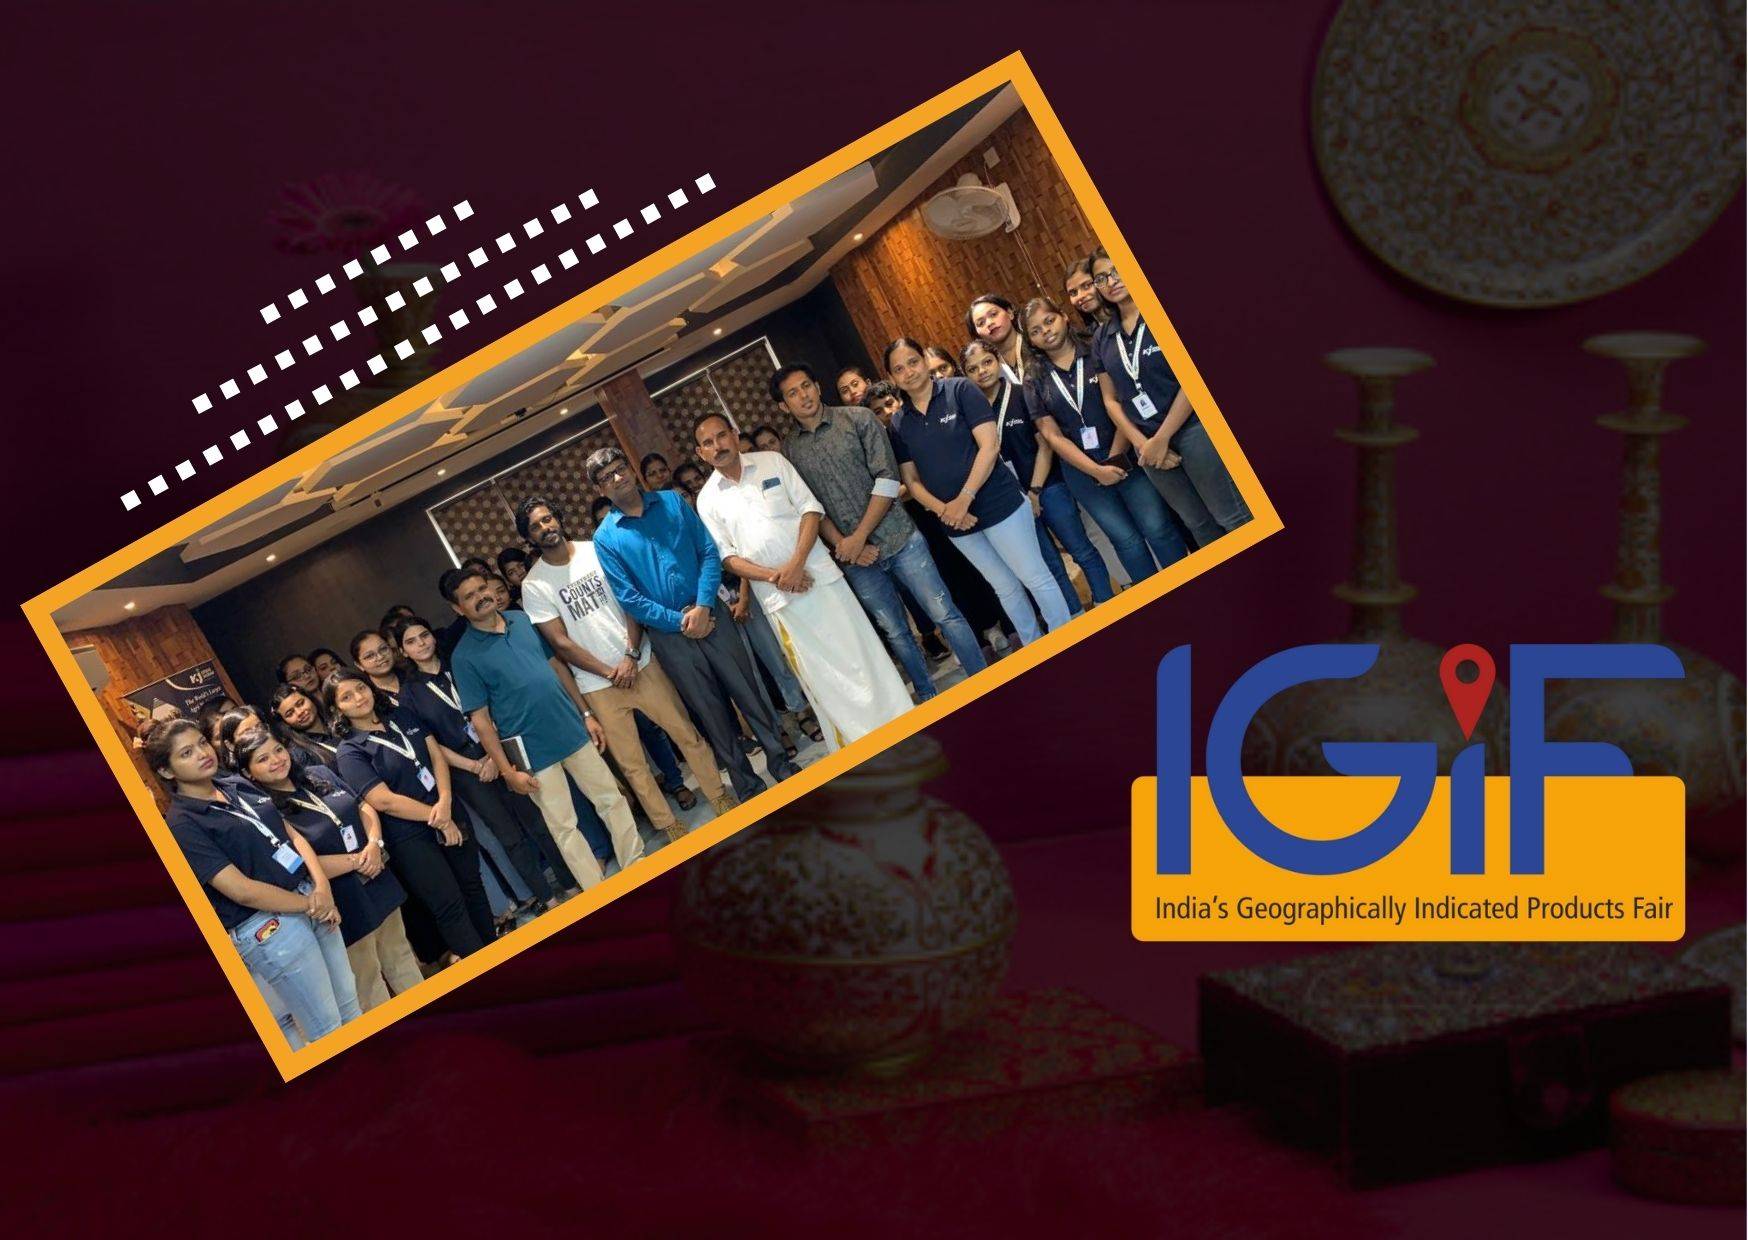 IGIF participants at Krishi Jagran